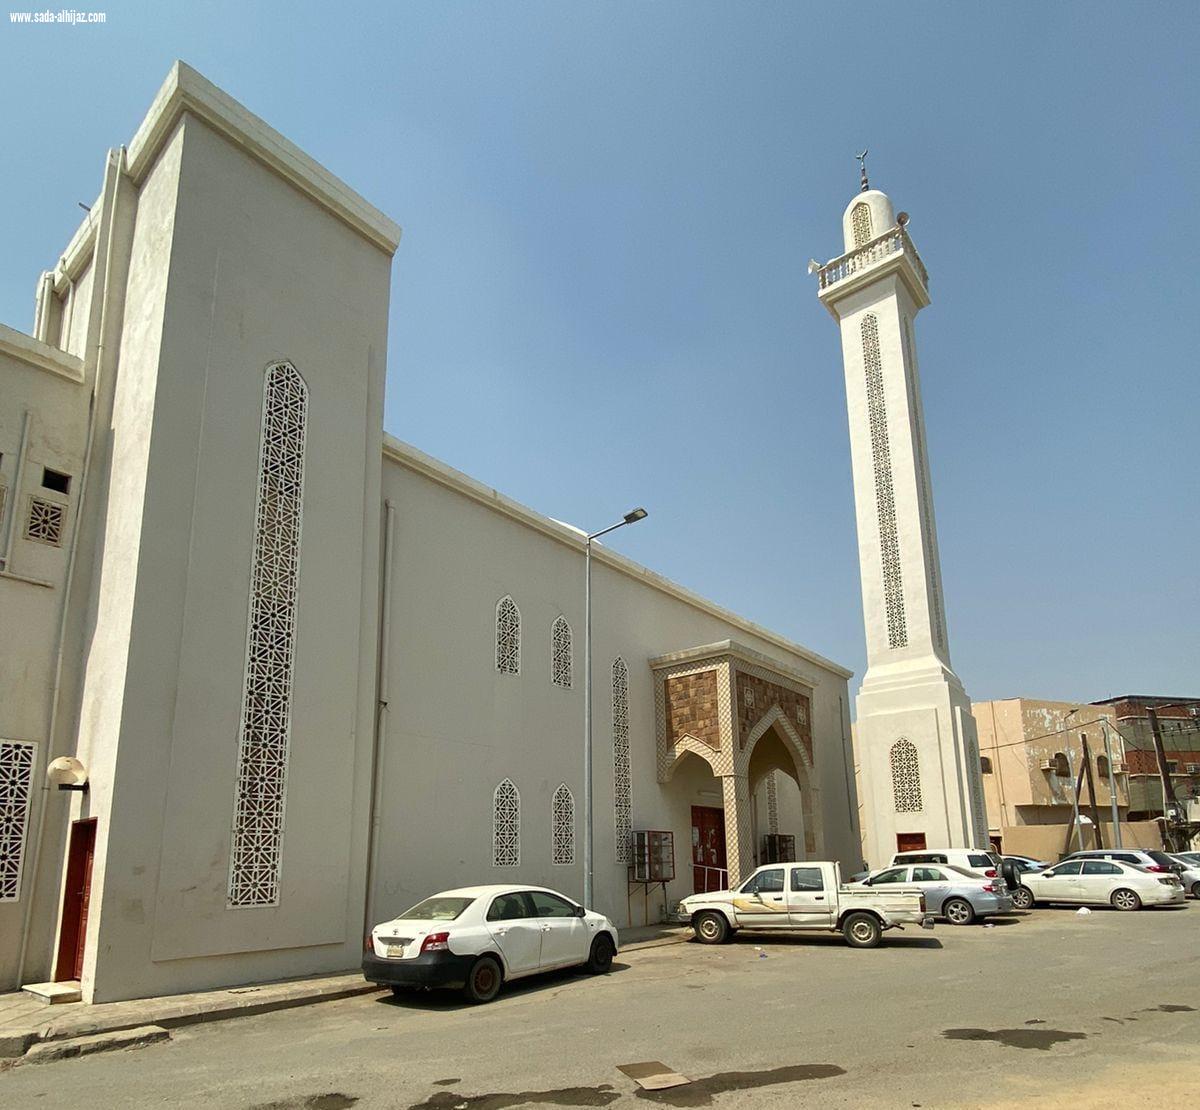 ضمن الشراكة المجتمعية بين مؤسسة القرعاوي و وقف الملوان دعم المسجد الأثري بأبو عريش بأجهزة تكييف